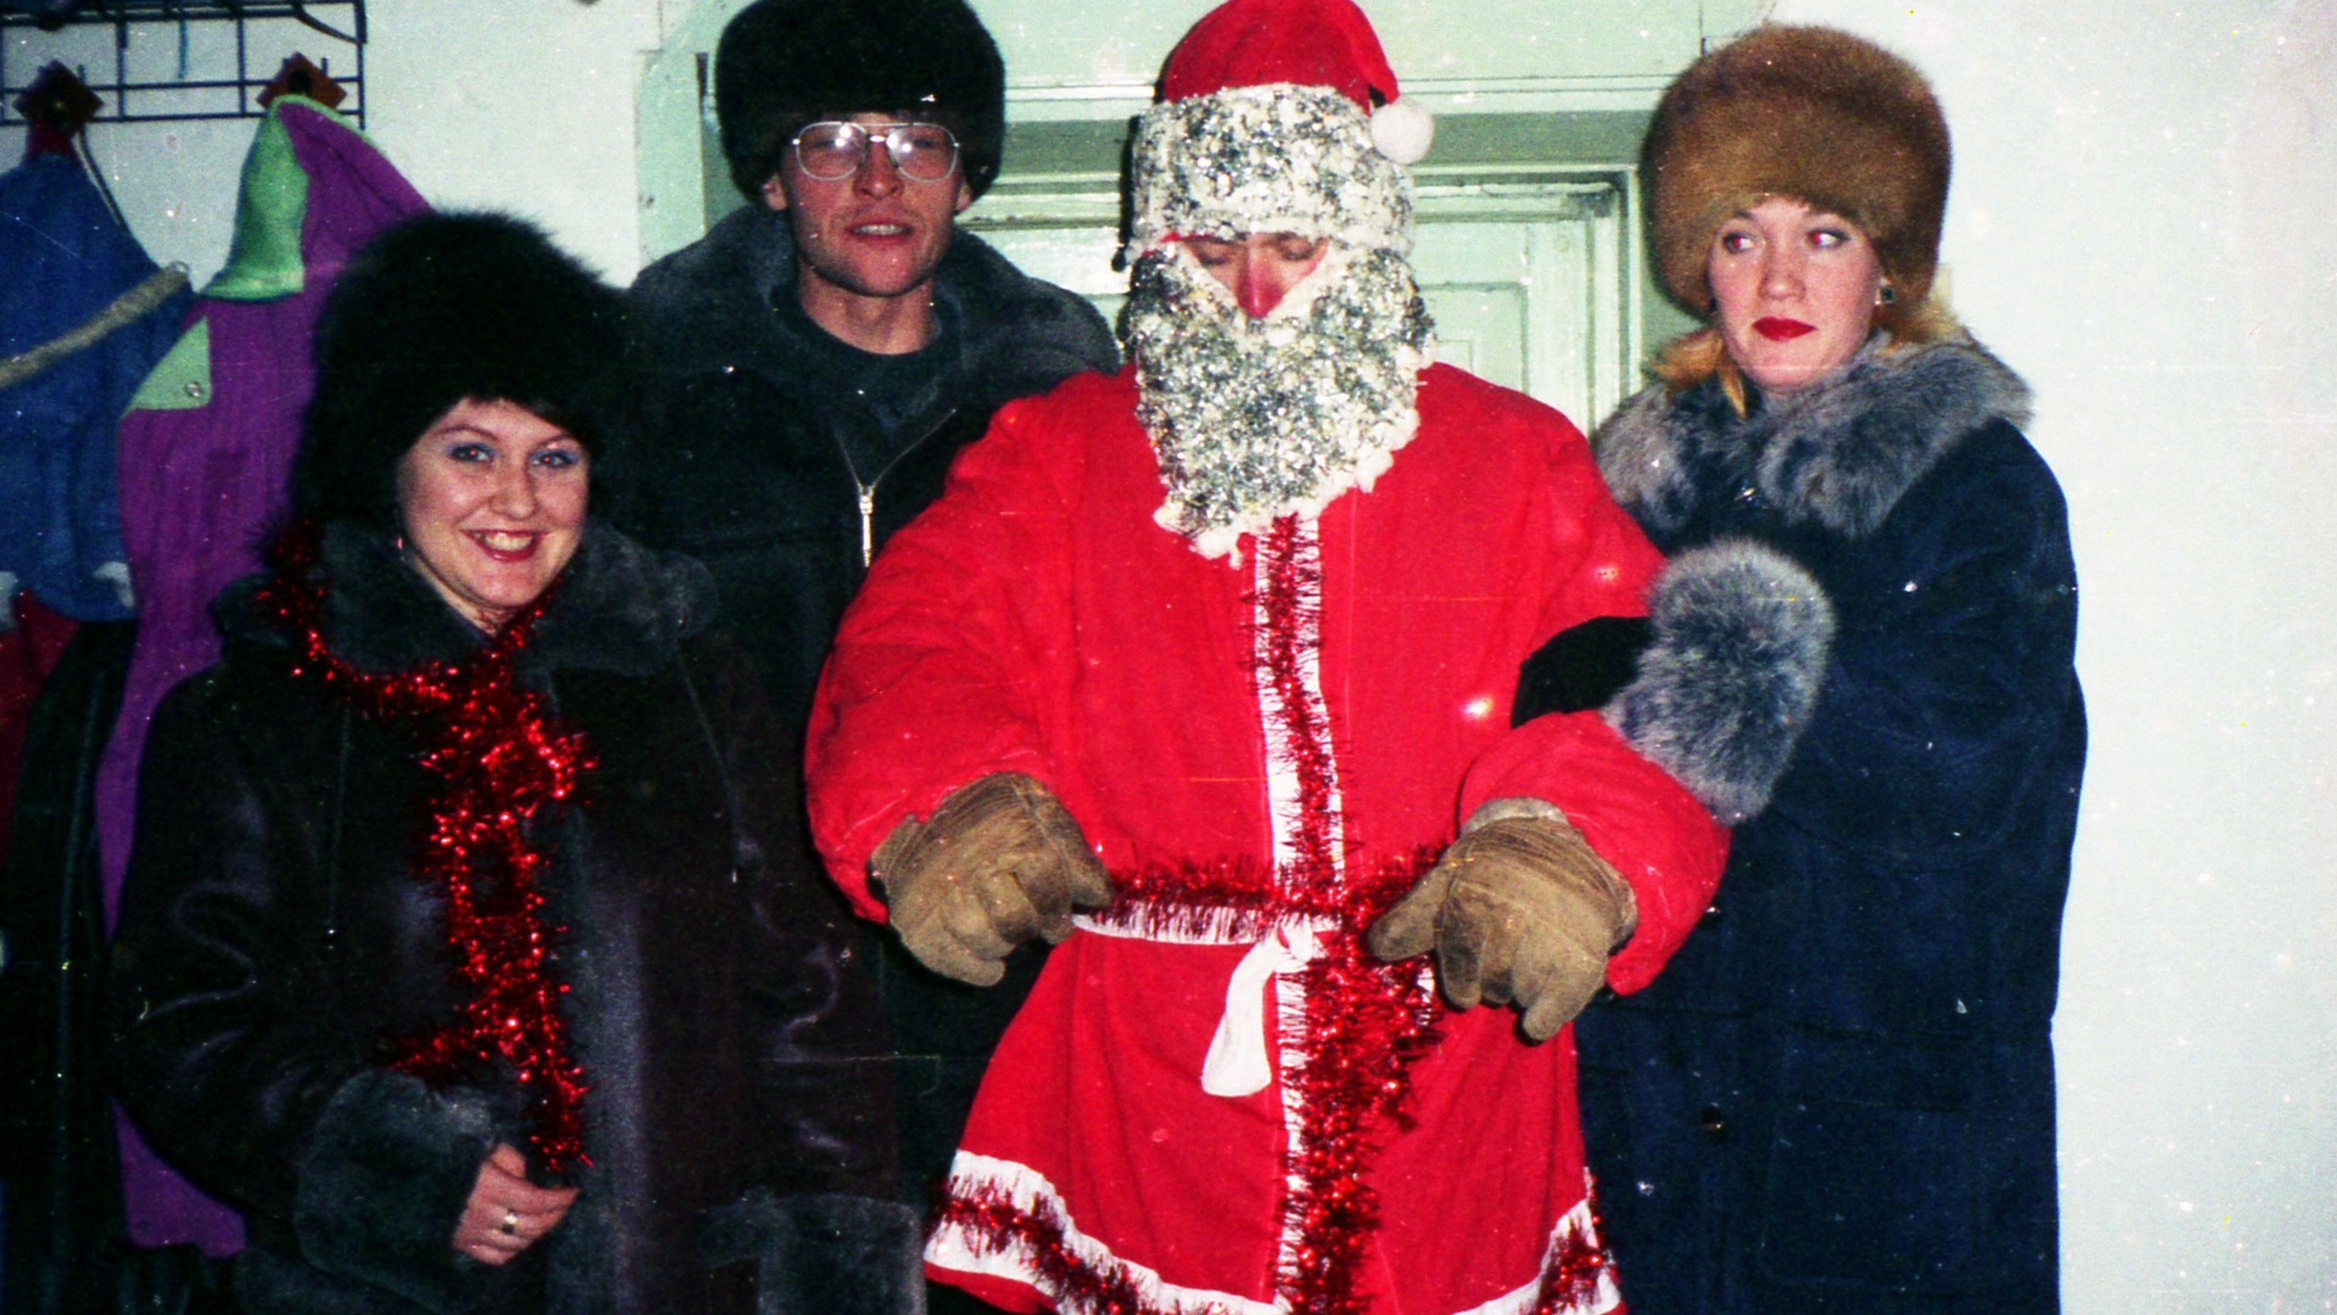 Меховые шапки, костюмы из мишуры и ананасы: смотрим, как в Челябинске отмечали Новый год в 1990-е (осторожно, ностальгия!)